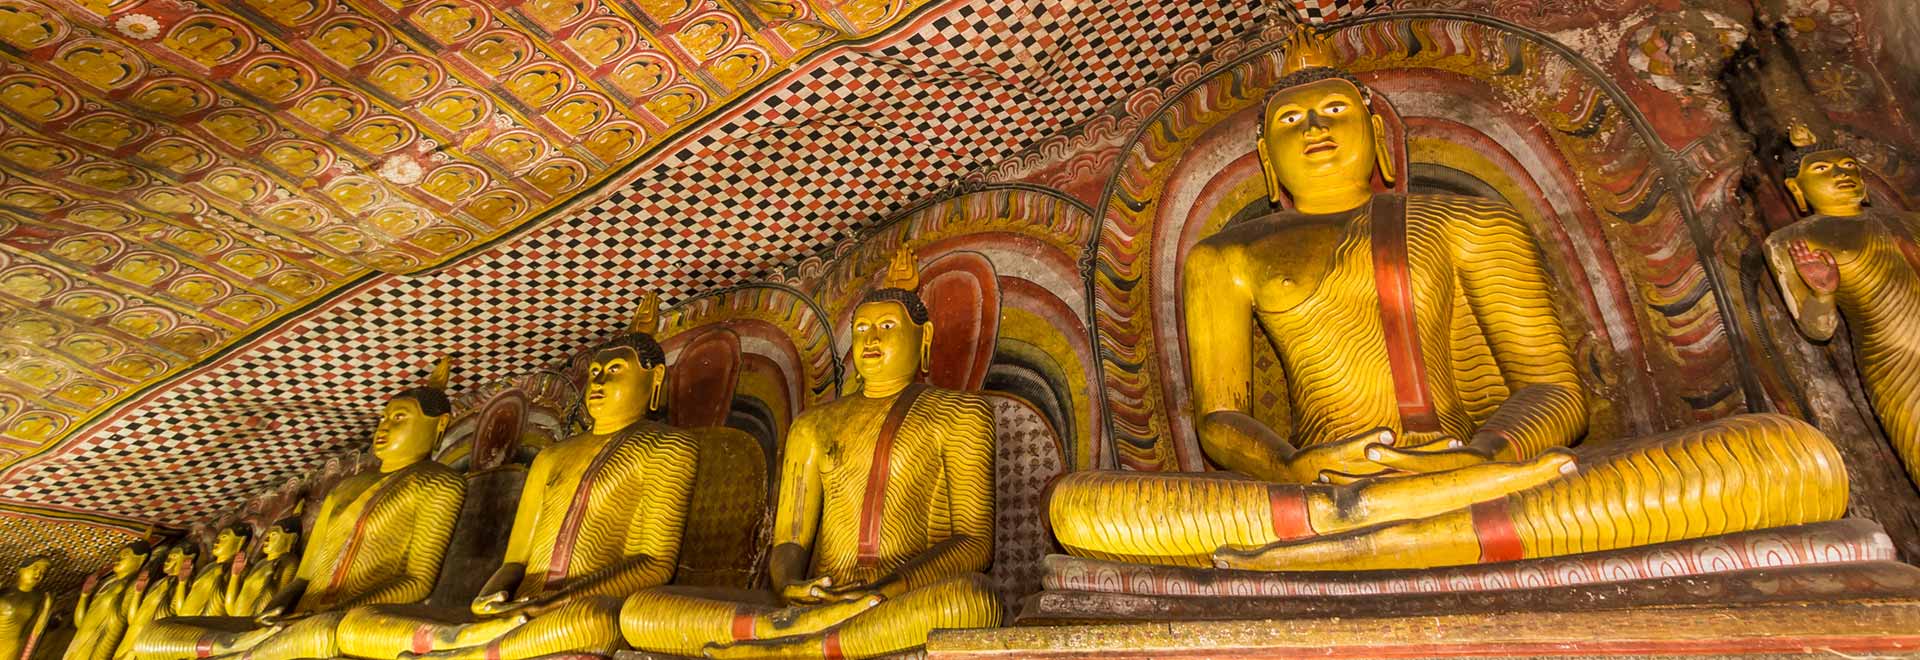 Asia Limited Edition Sri Lanka Secrets Spice Island Dambulla Cave Temple MH 2020